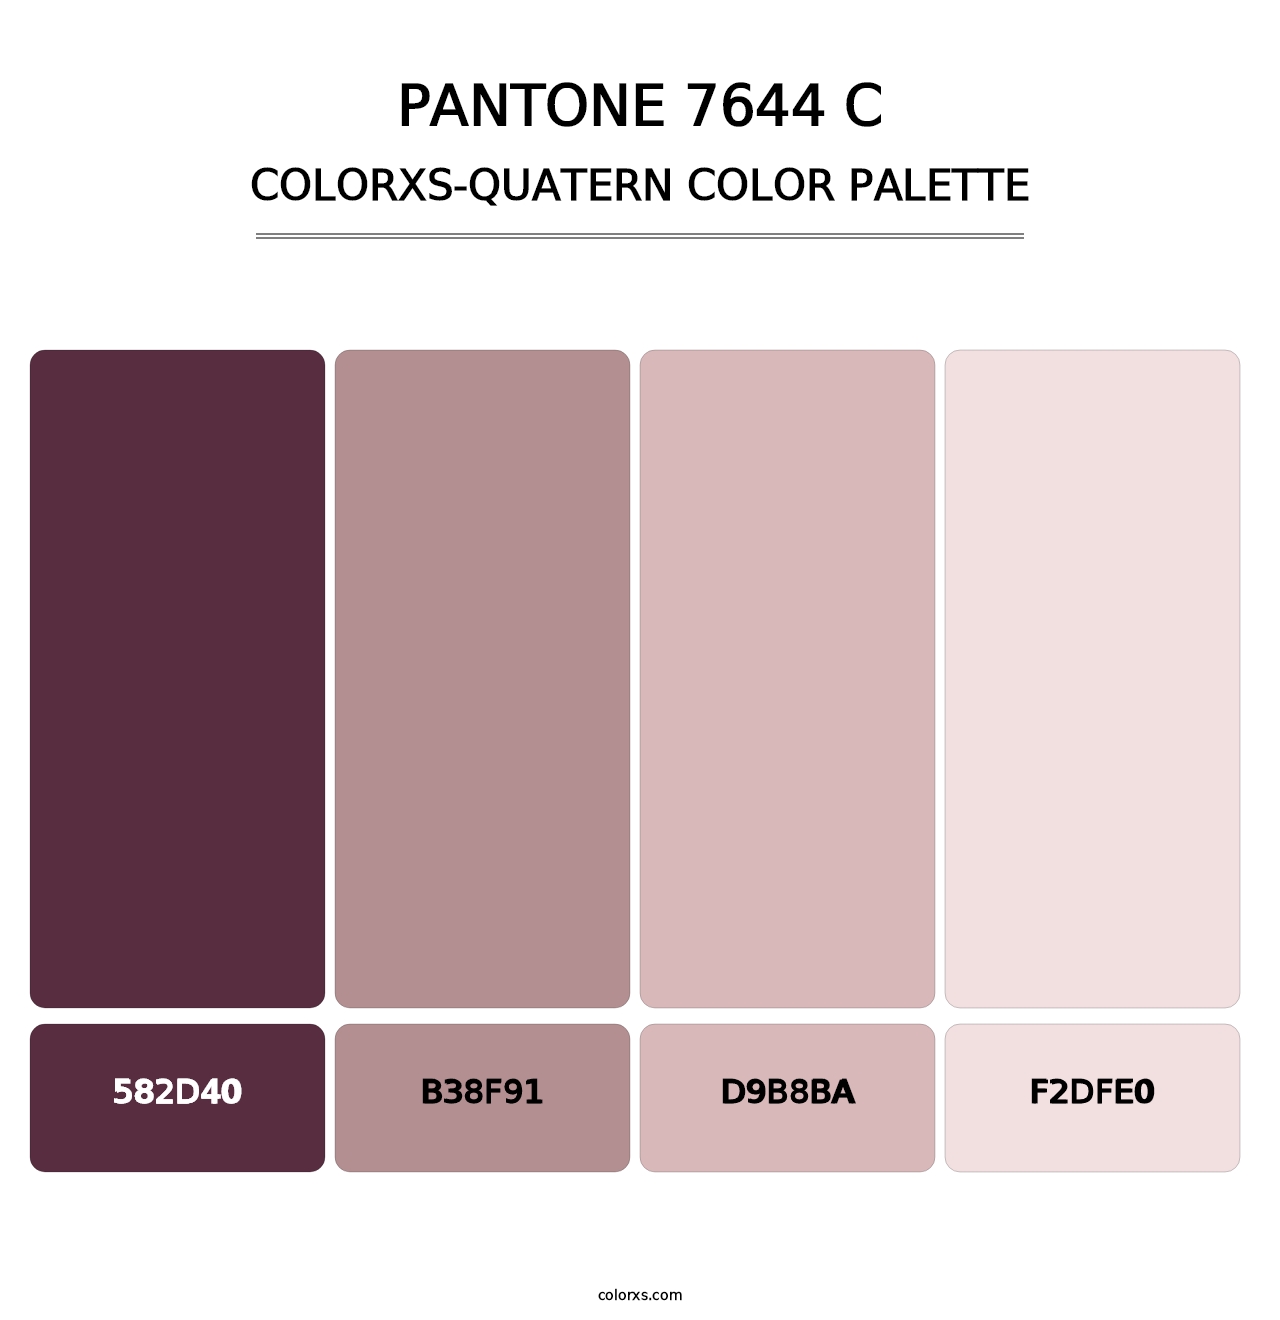 PANTONE 7644 C - Colorxs Quatern Palette